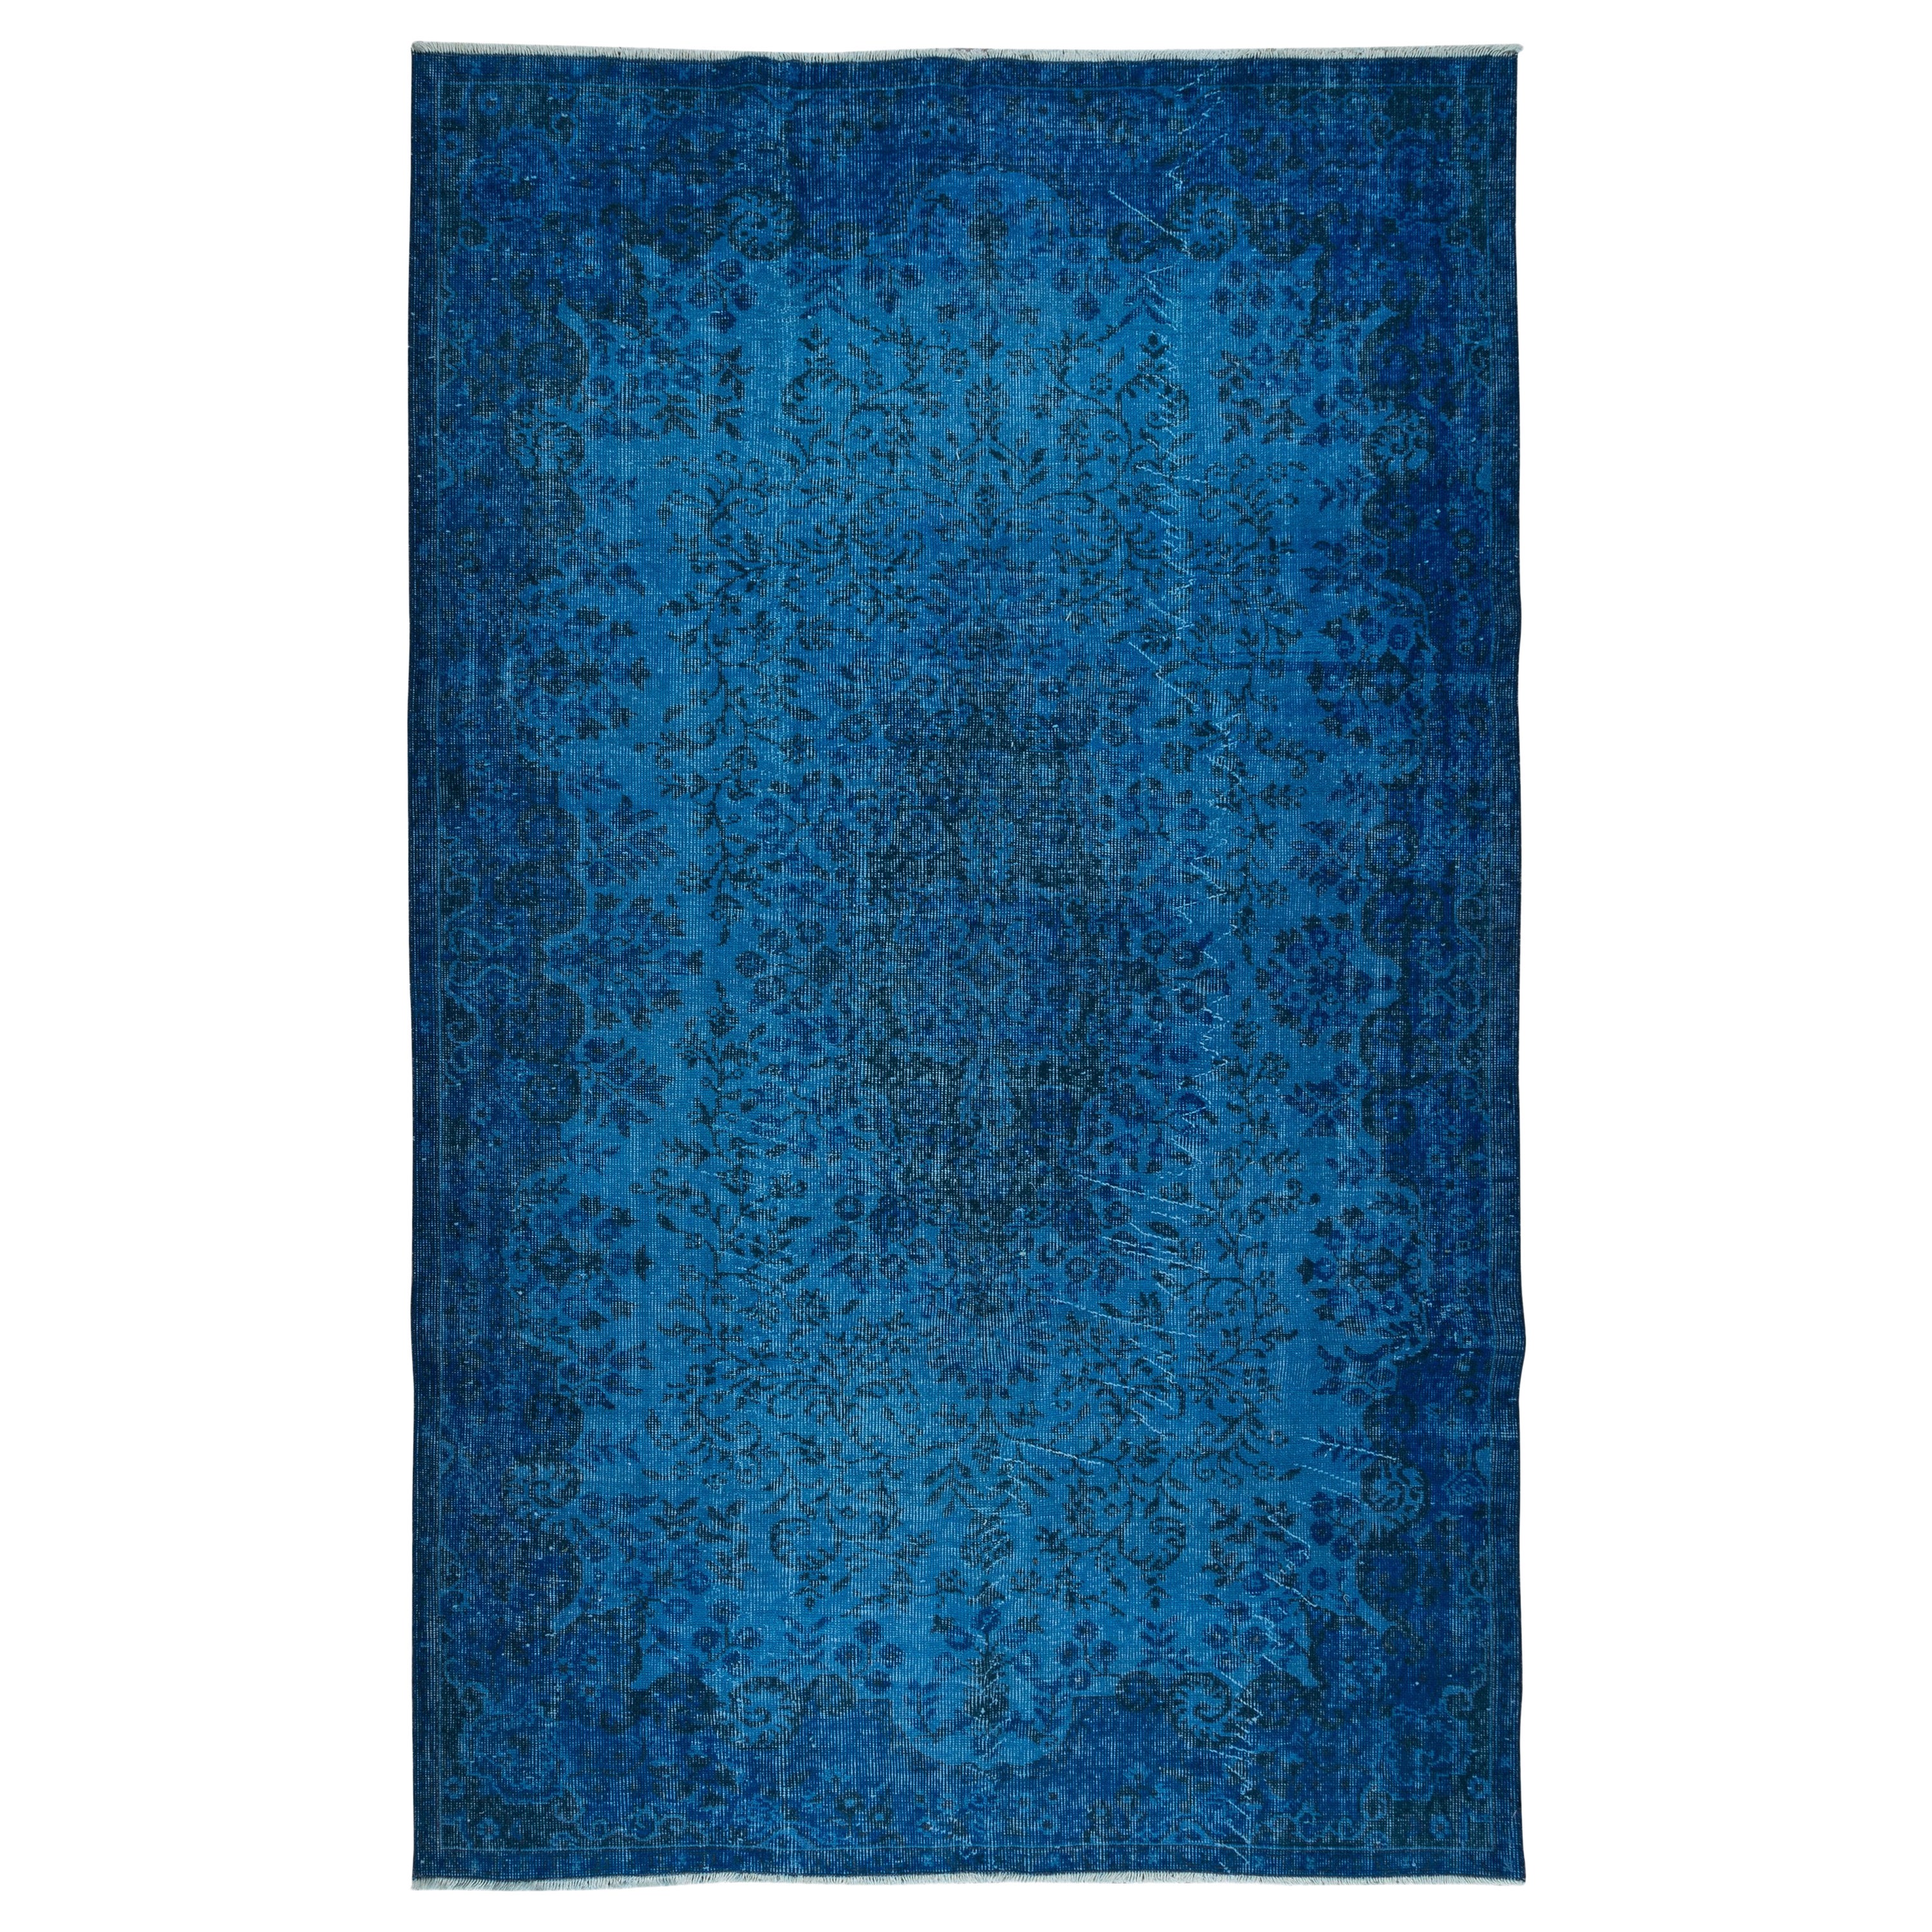 5.7x9 Ft Blauer handgefertigter türkischer Teppich für Wohnzimmer, Esszimmer und Kinderzimmer